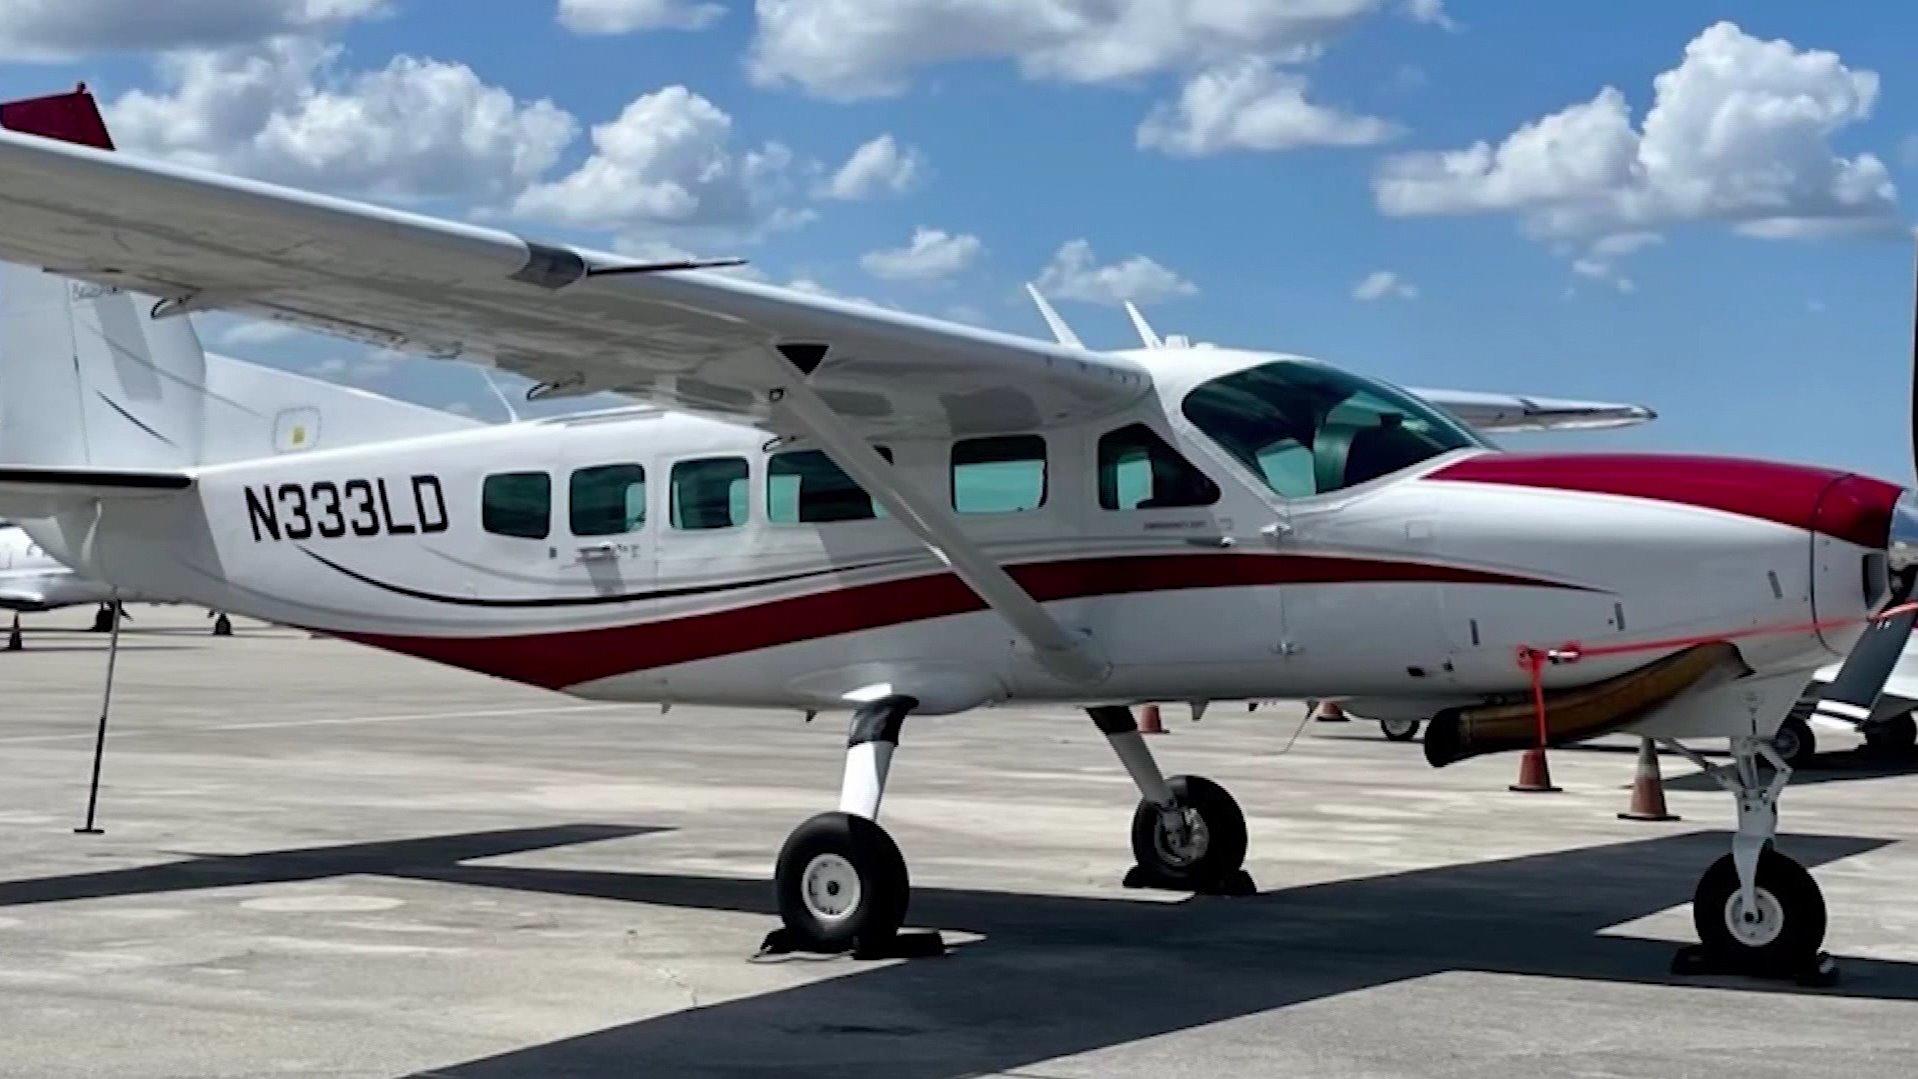 In dieser Cessna saß Darren Harrison mit einem weiteren Passagier. Nachdem der Pilot bewusstlos wurde, musste der 39-Jährige das Cockpit übernehmen. Der Mann steuerte und landete das Flugzeug sicher - ohne eine Pilotenausbildung.